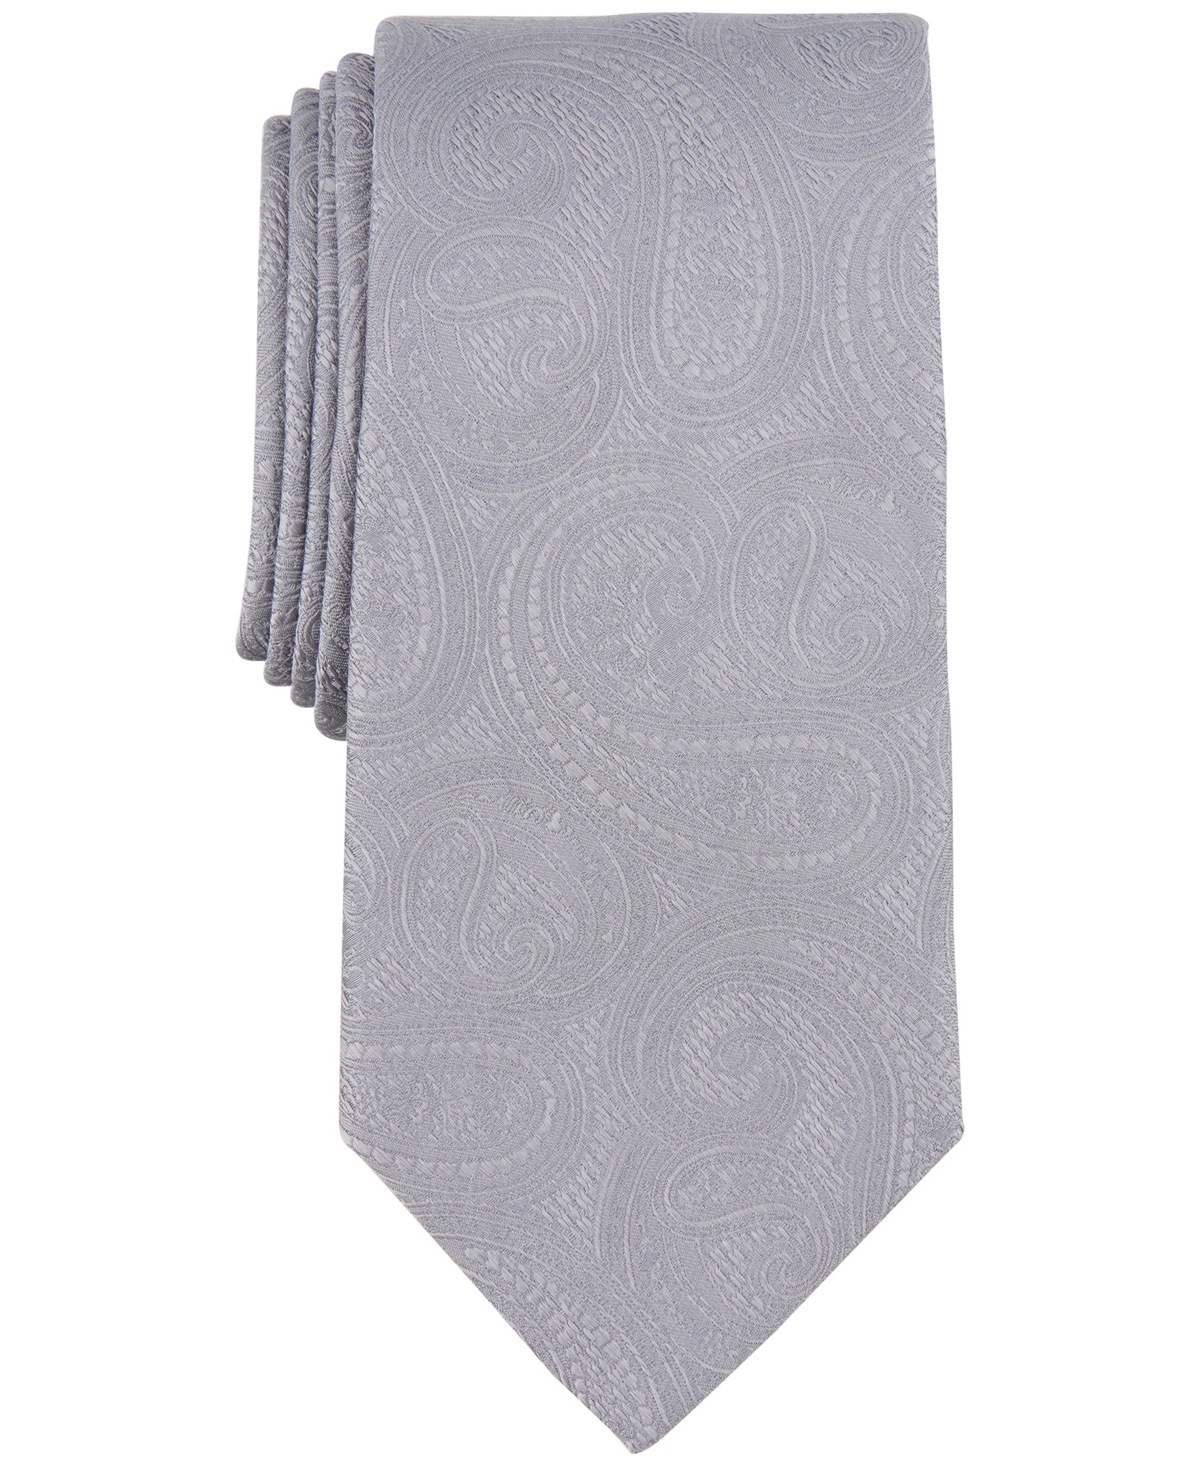 Michael Kors Men's Rich Texture Paisley Tie In Grey